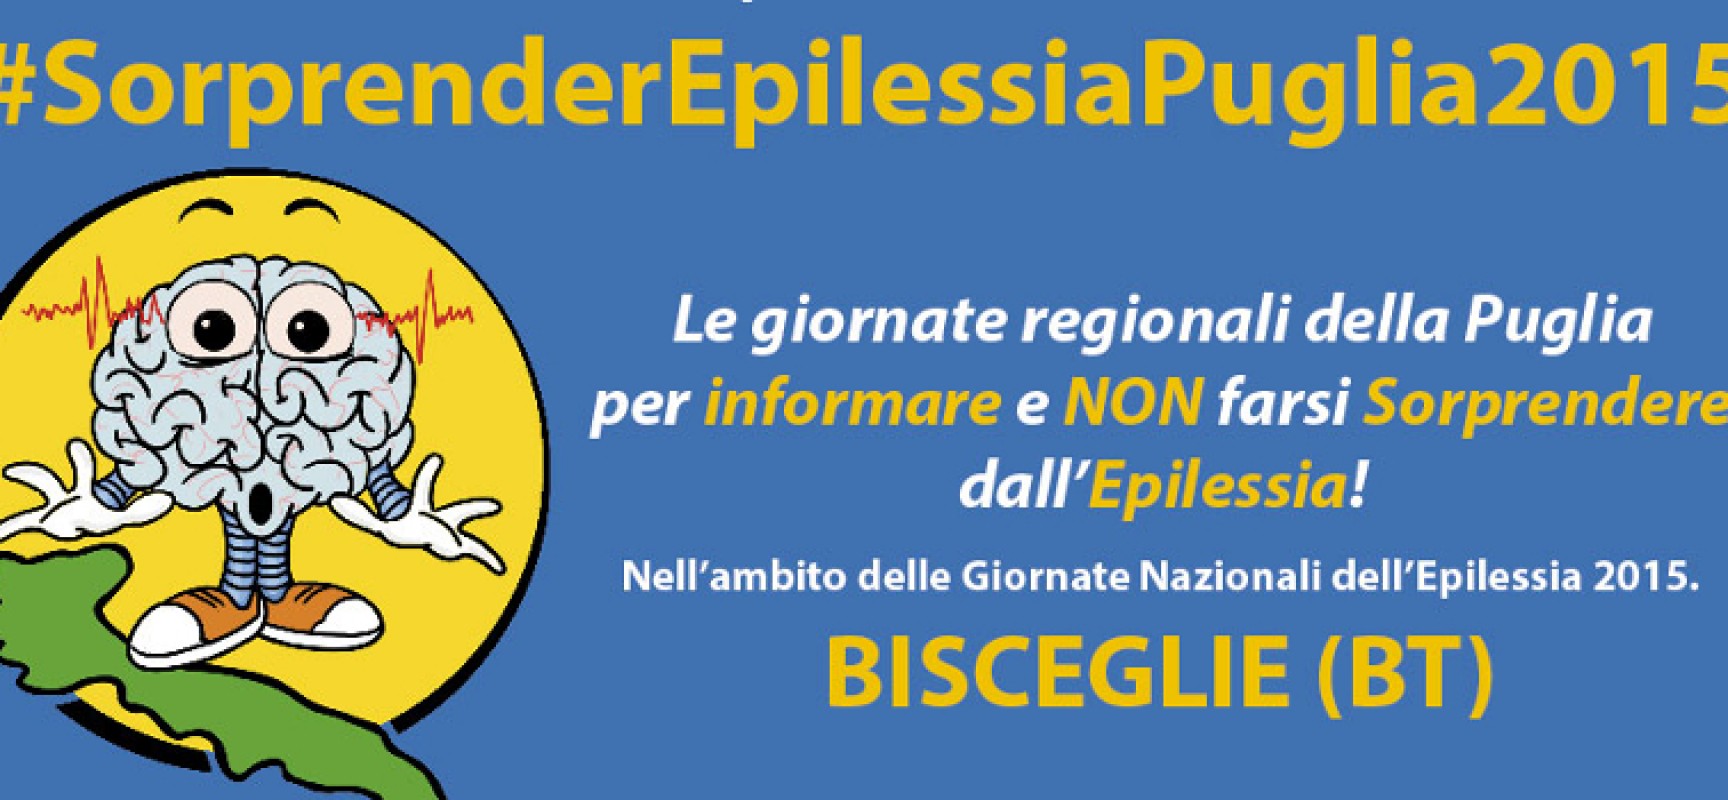 #SorprenderEpilessiaPuglia2015, a Bisceglie le giornate regionali per la sensibilizzazione sull’epilessia